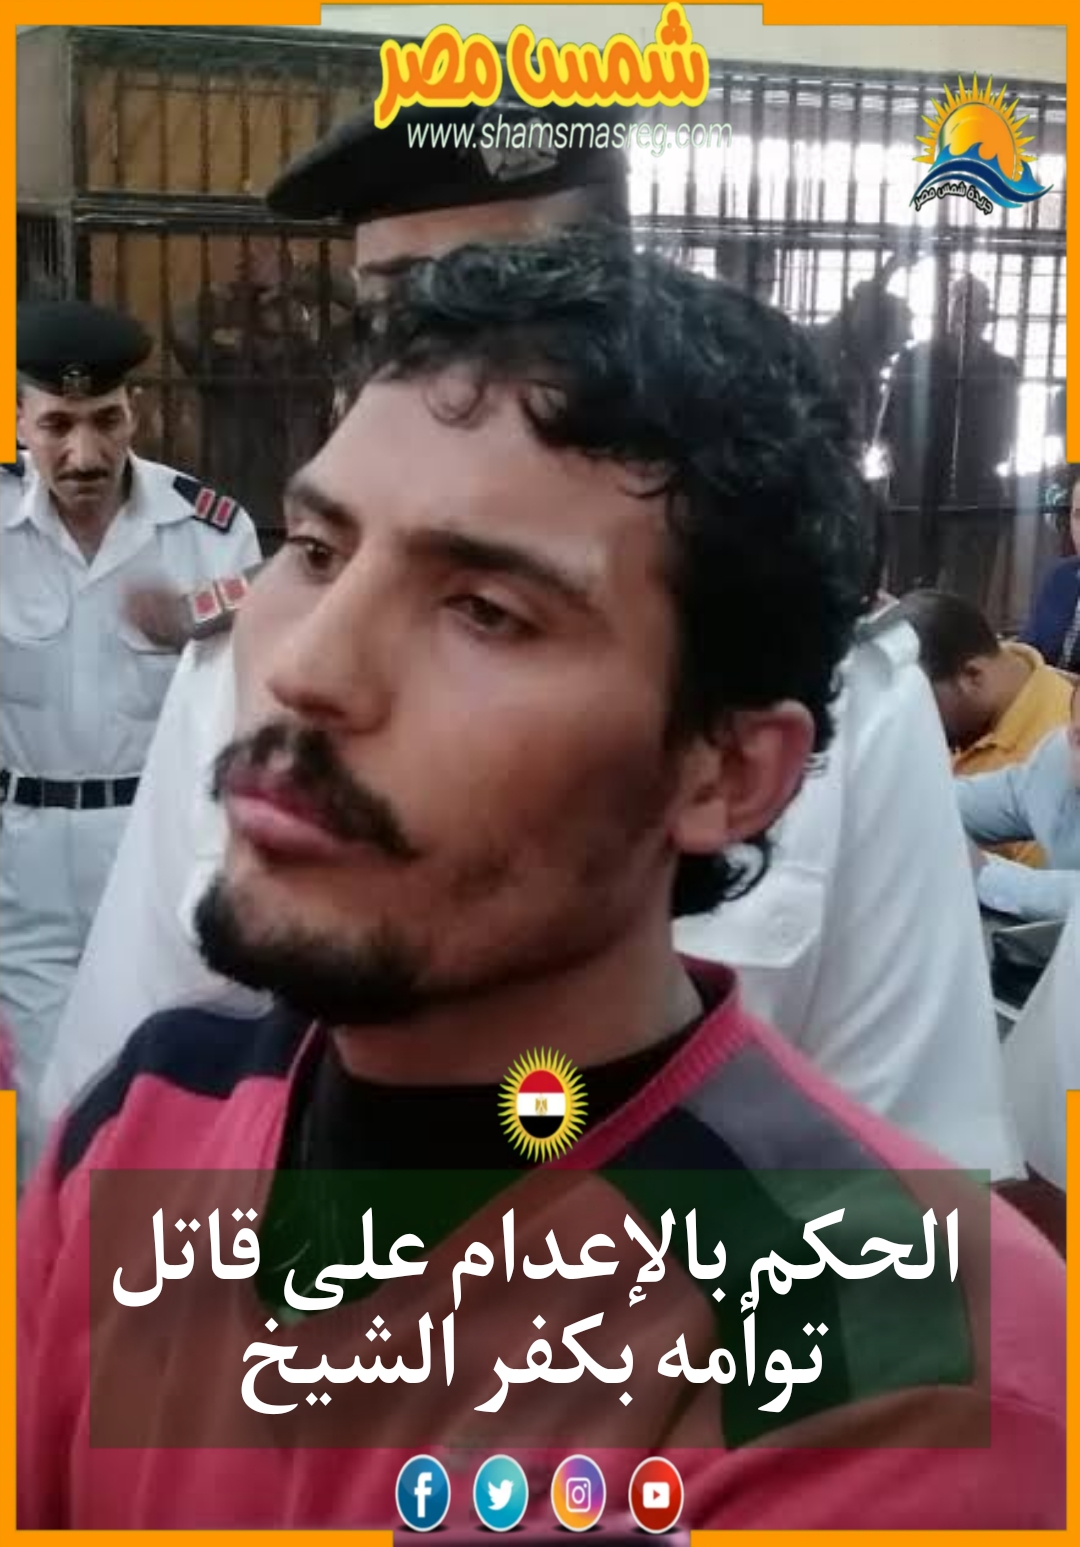 الحكم بالإعدام على قاتل توأمه بكفر الشيخ